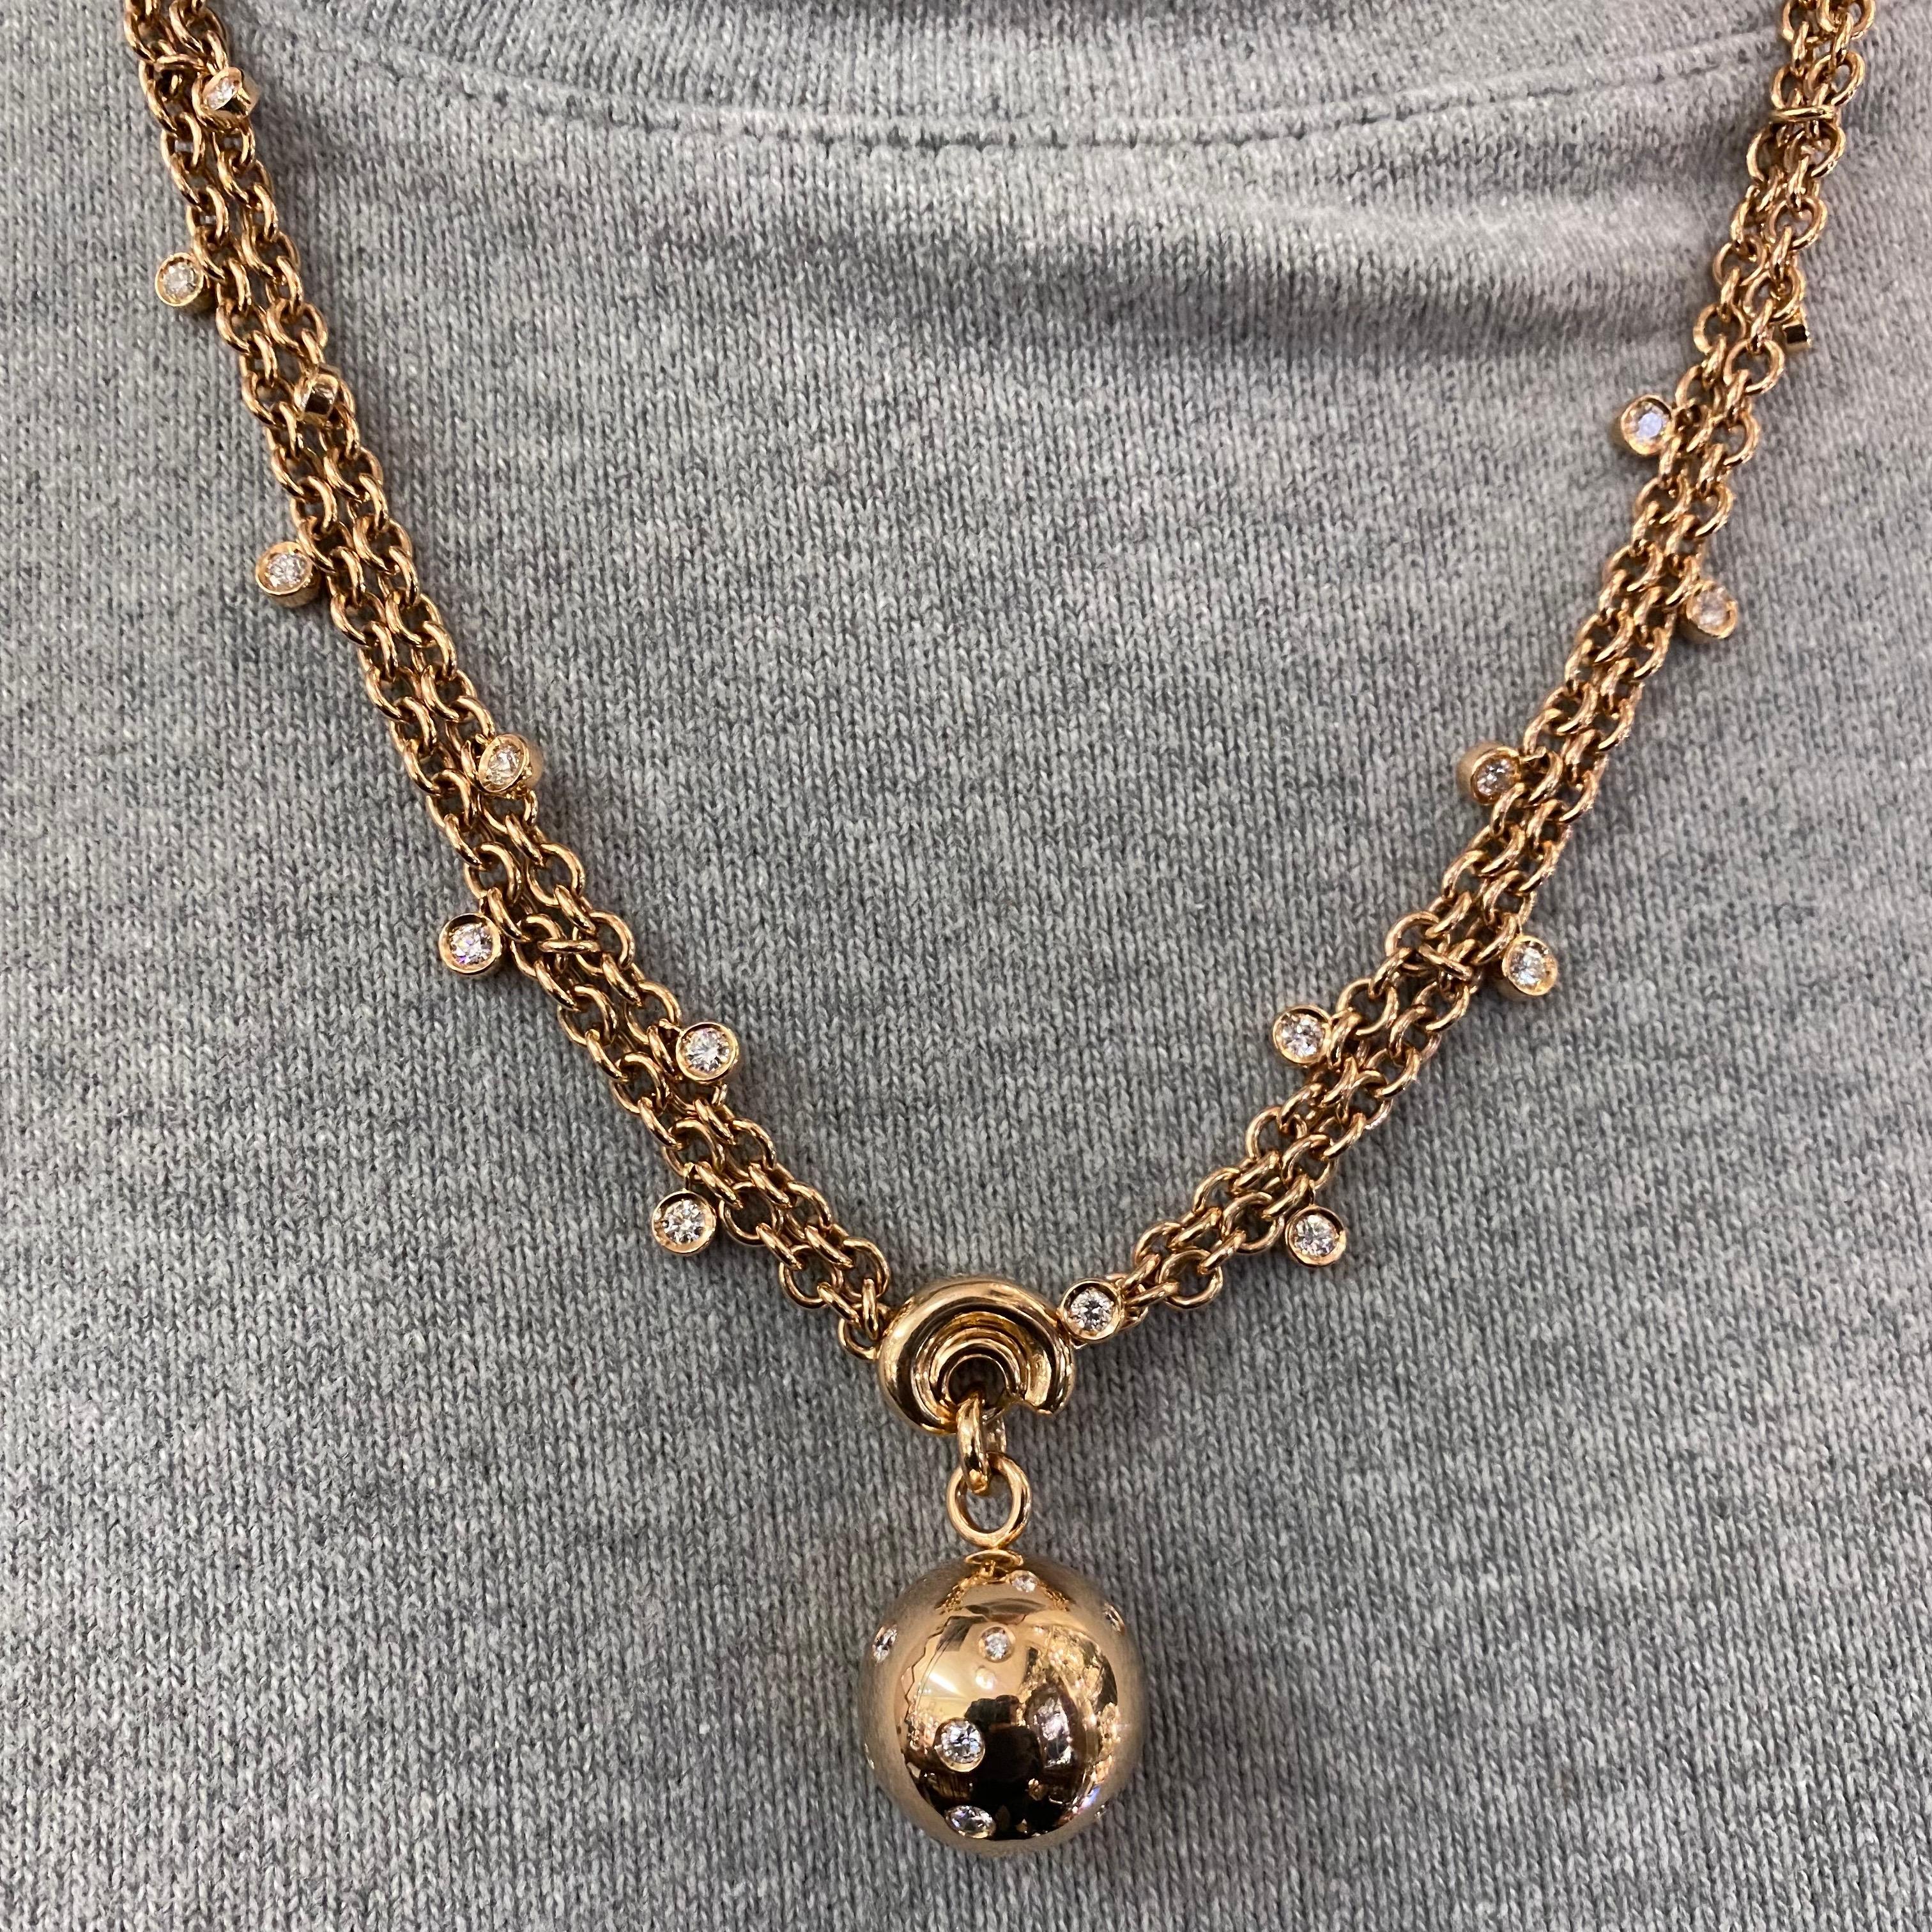 de GRISOGONO Round Brilliant Cut Diamond Boule Charm Pendant Necklace Rose Gold 2